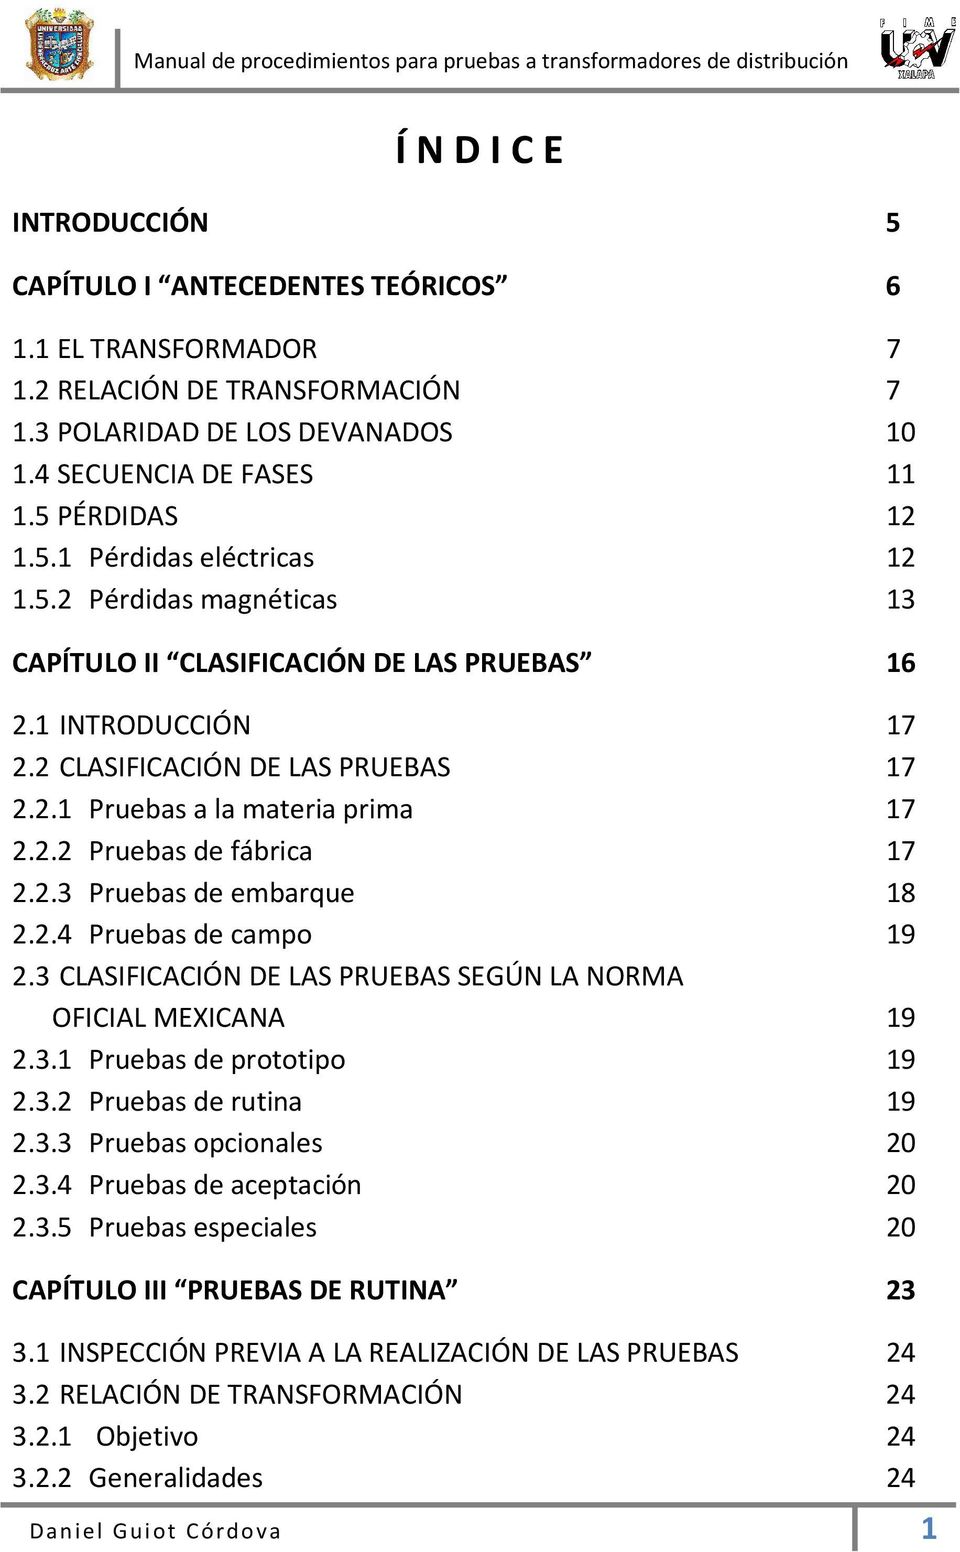 2.4 Pruebas de campo 19 2.3 CLASIFICACIÓN DE LAS PRUEBAS SEGÚN LA NORMA OFICIAL MEXICANA 19 2.3.1 Pruebas de prototipo 19 2.3.2 Pruebas de rutina 19 2.3.3 Pruebas opcionales 20 2.3.4 Pruebas de aceptación 20 2.